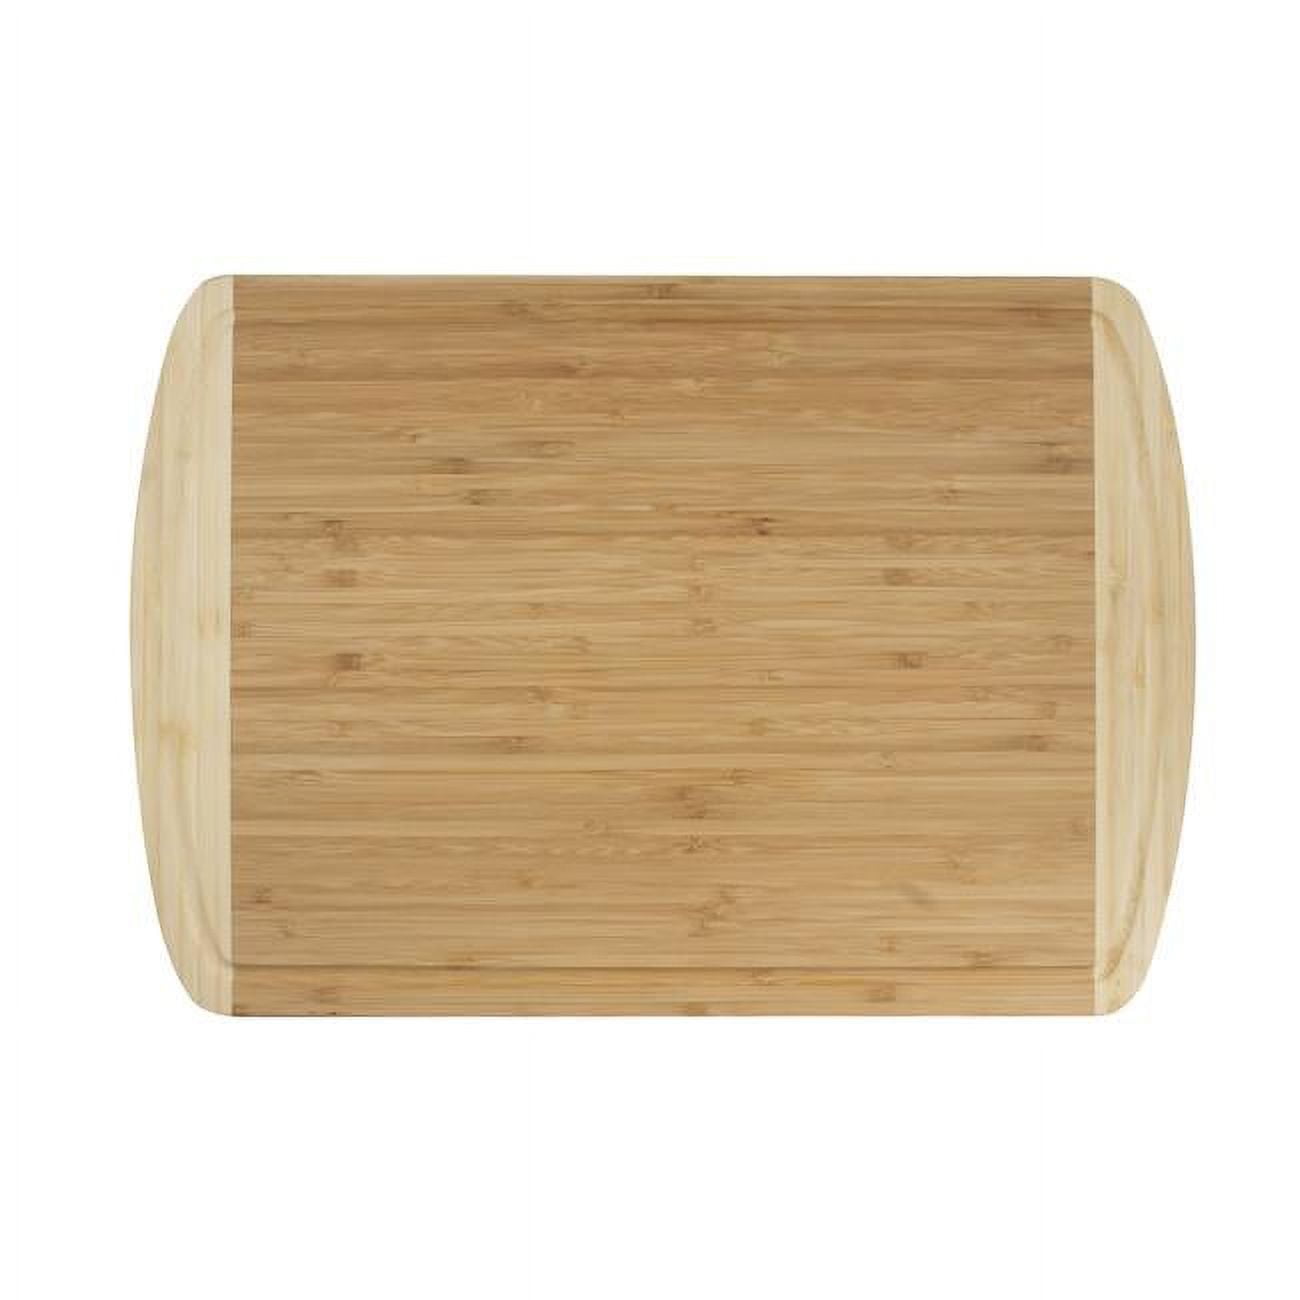 Ktcb18 Bamboo Cutting Board